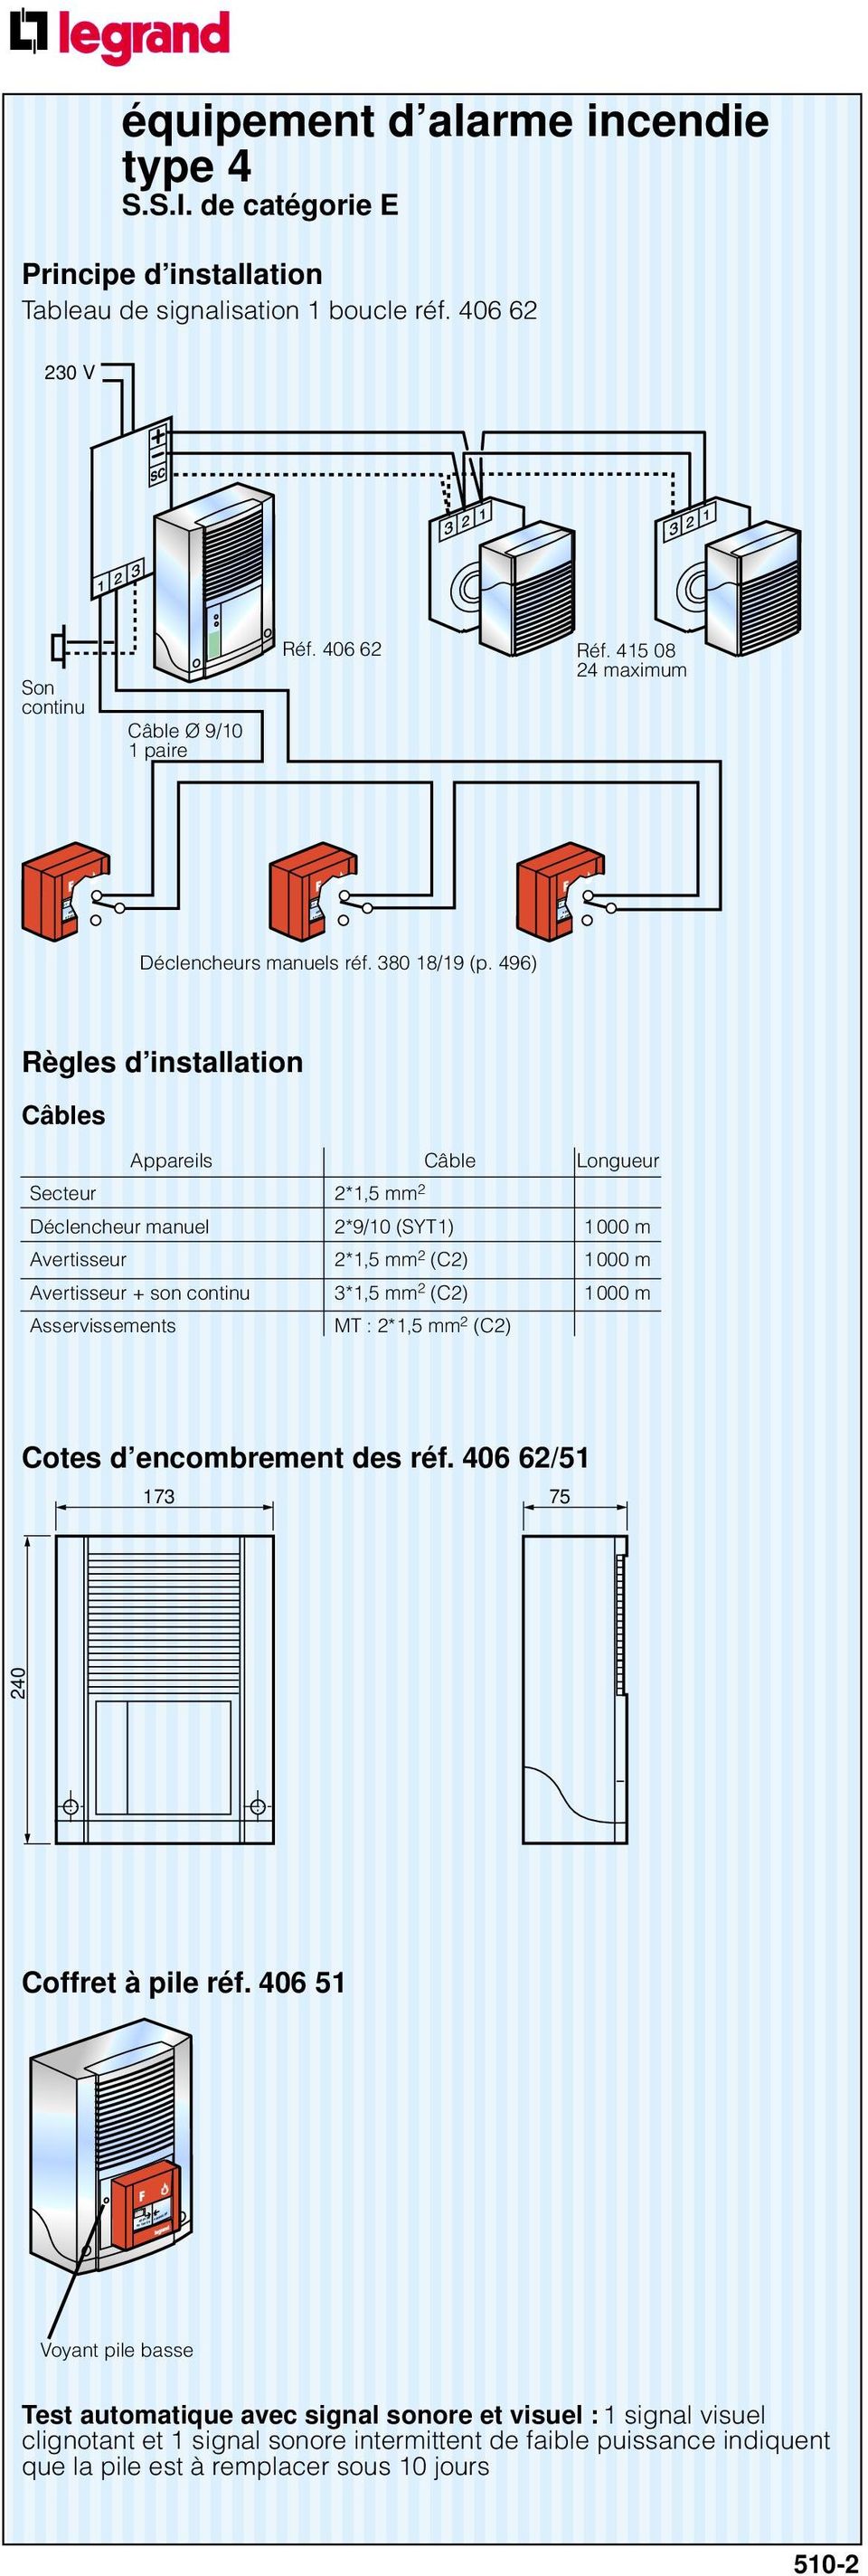 496) Règles d installation Câbles Appareils Câble Longueur Secteur 2*1,5 mm 2 Déclencheur manuel 2*9/10 (SYT1) 1 000 m Avertisseur 2*1,5 mm 2 (C2) 1 000 m Avertisseur + son continu 3*1,5 mm 2 (C2) 1